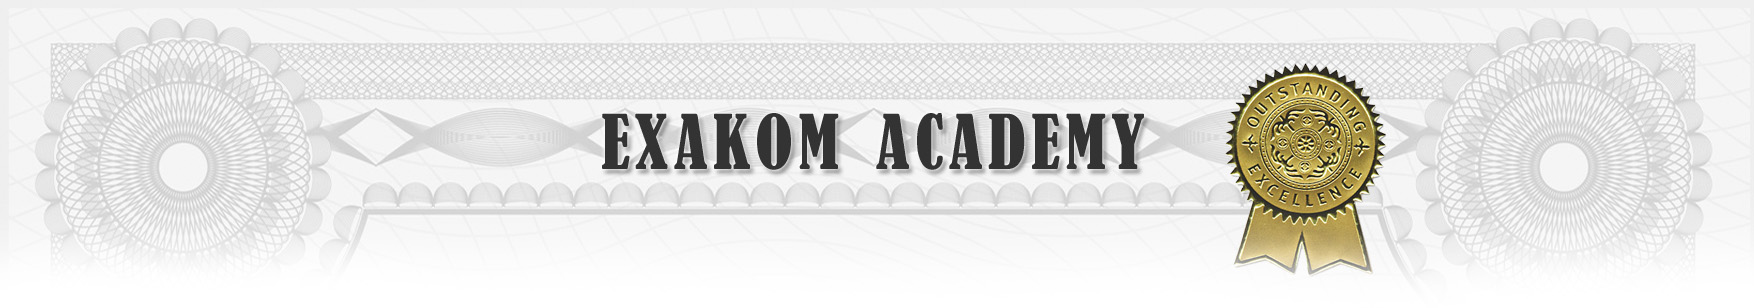 exakom academy